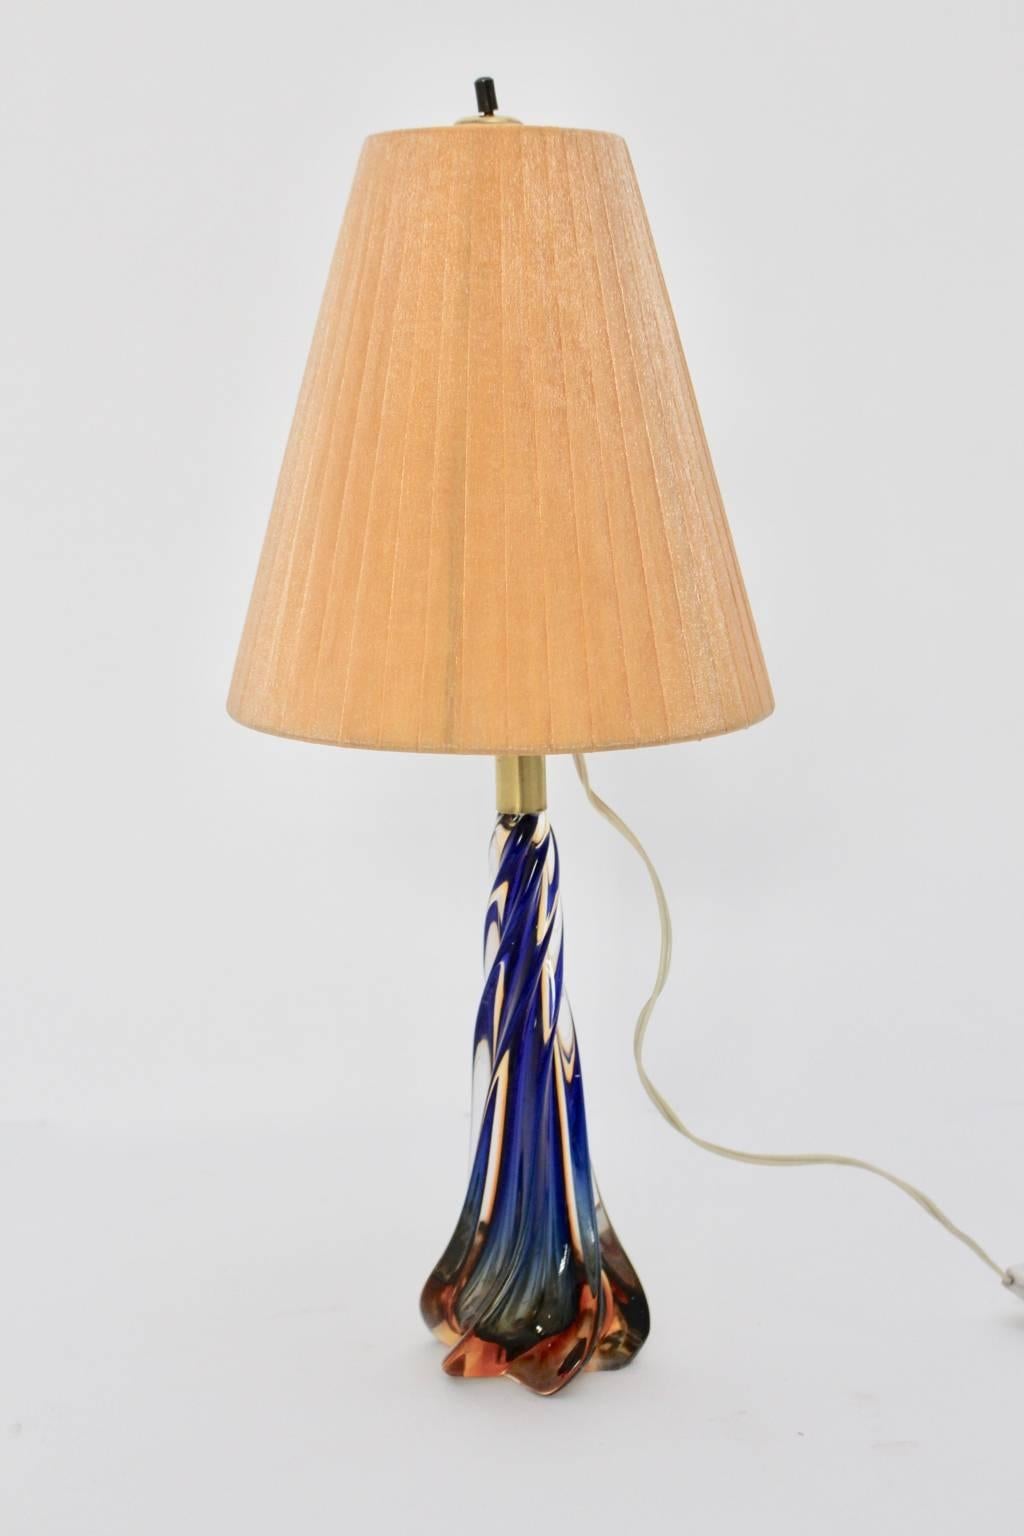 Lampe de table en verre de Murano bleu et orange, de style moderne du milieu du siècle, avec une base en verre tourné et des détails en laiton. Cette pièce délicate a été conçue et fabriquée à Murano, à Venise, en Italie, dans les années 1950.
La